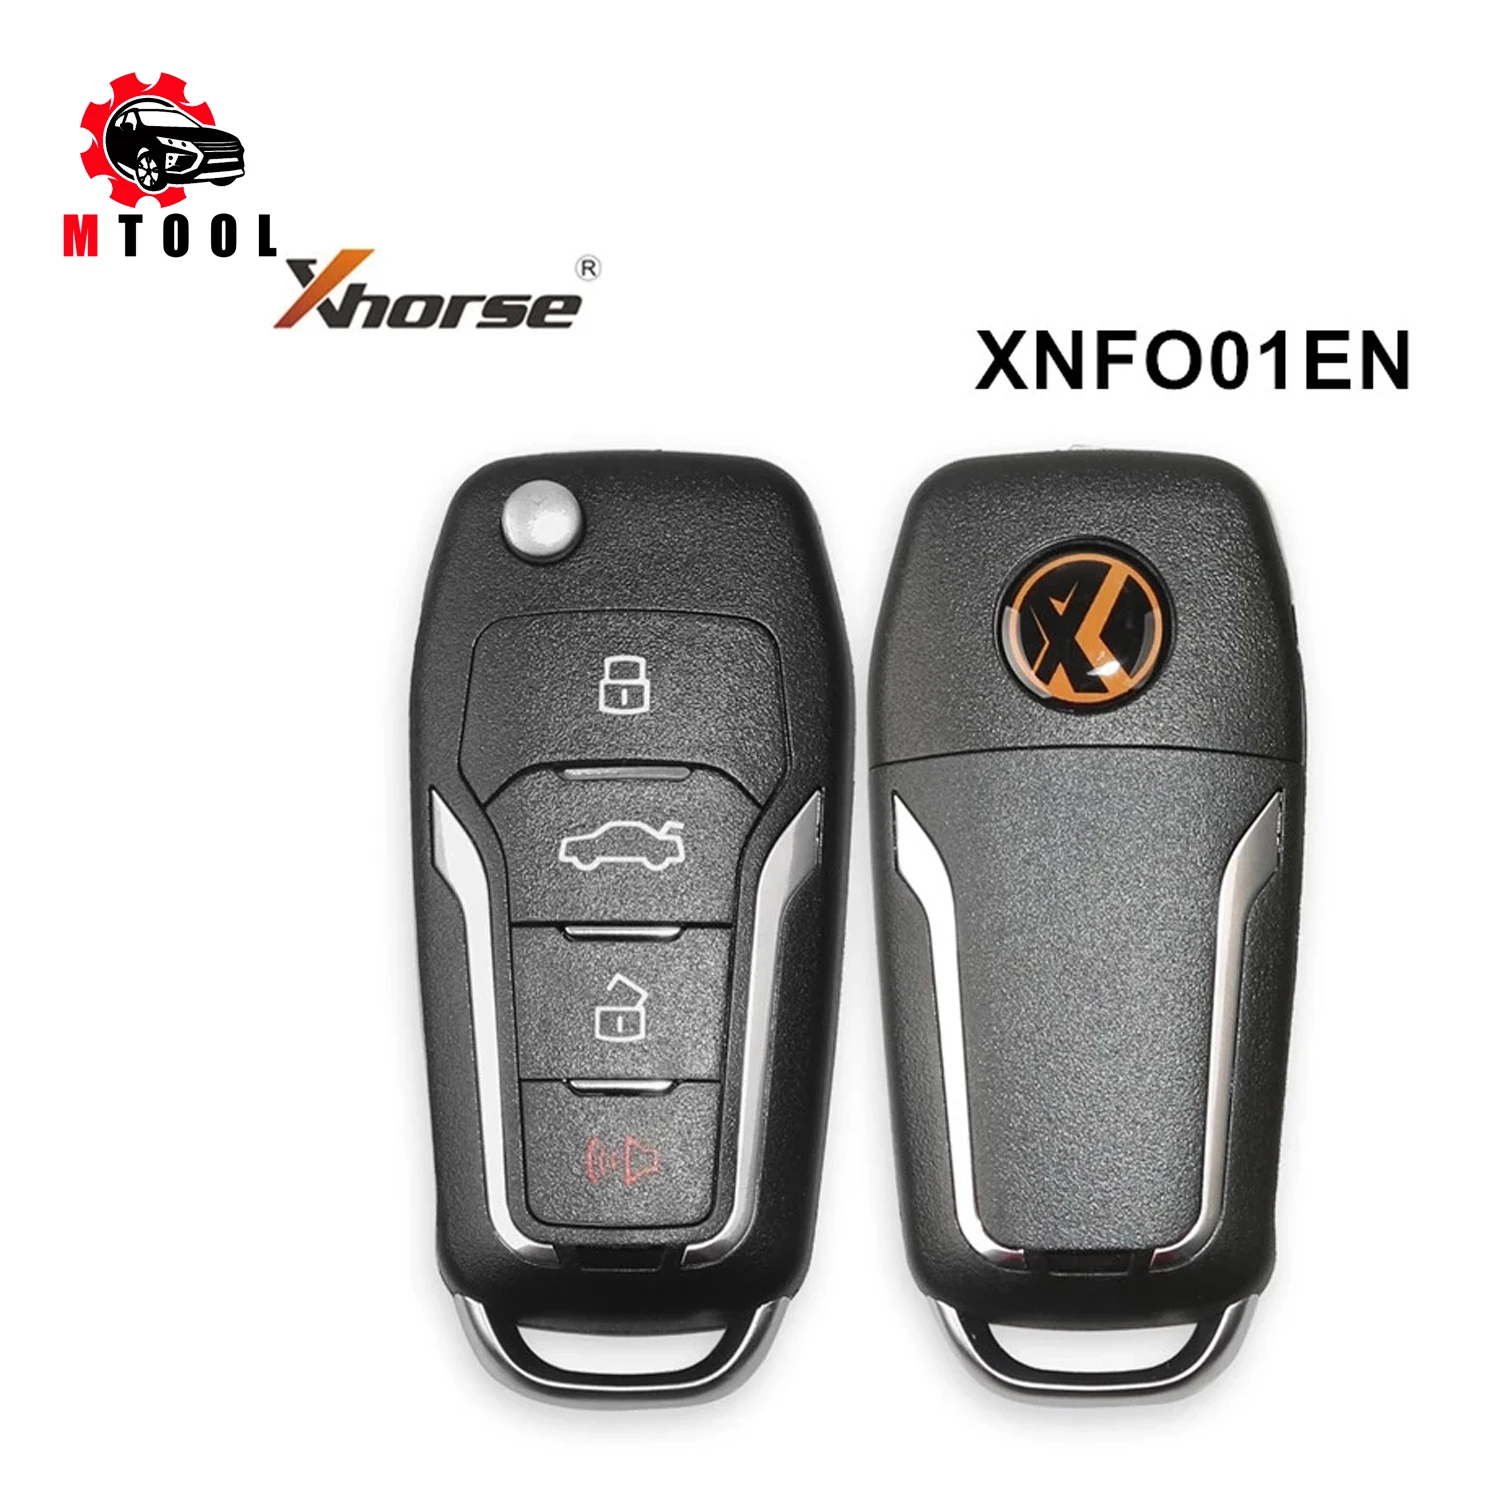 

10 шт. Xhorse XNFO01EN VVDI беспроводной универсальный пульт дистанционного управления автомобильный ключ 4 кнопки для Ford для VVDI мини ключ инструмент ...